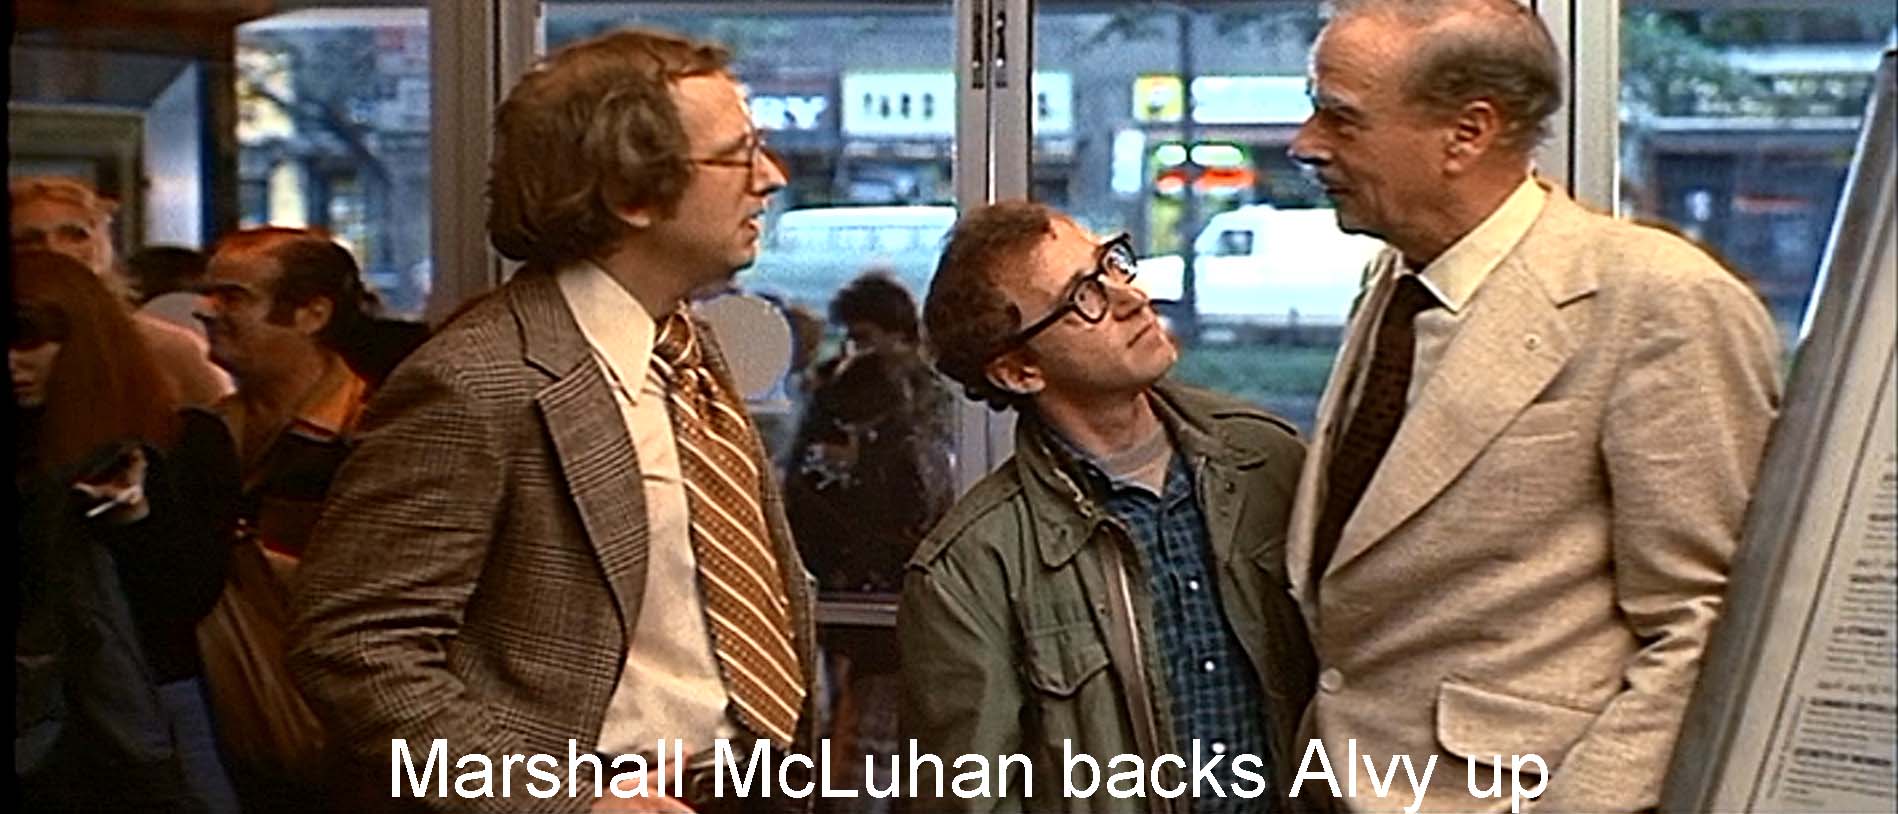  Marshall McLuhan backs Alvy up